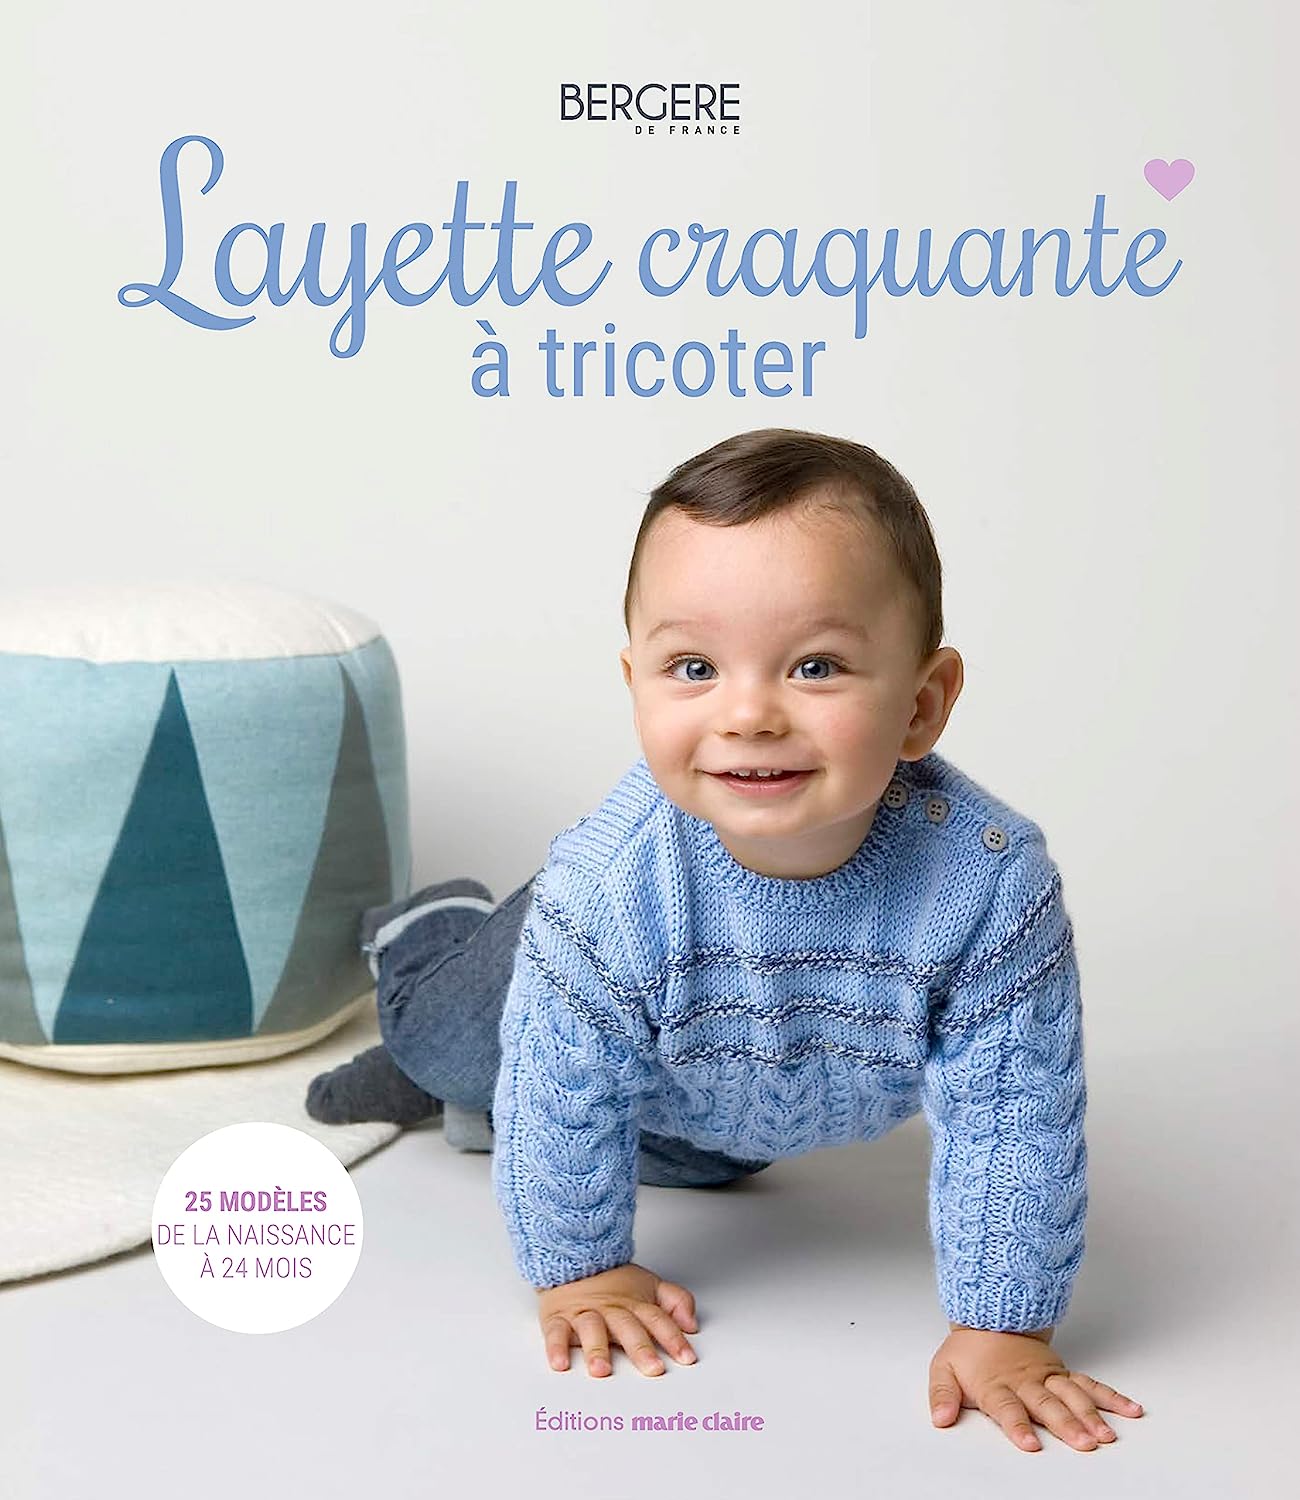 Bergère de France - Layette craquante à tricoter